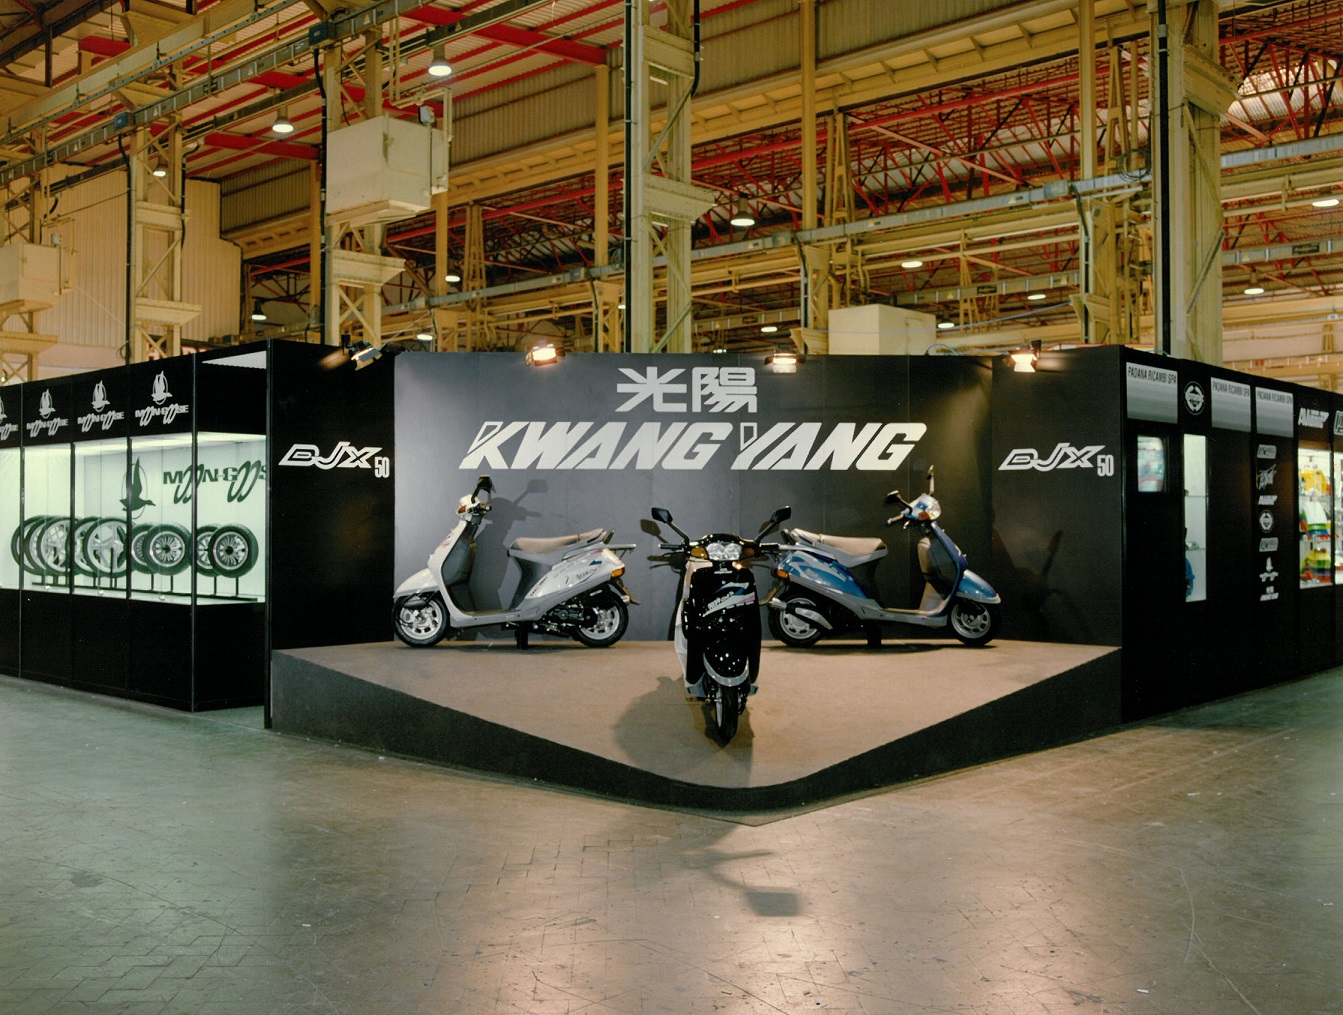 1991 年 Kymco 代理商首度參加米蘭車展。當時在國外車展攤位上還出現中文商標光陽與當時的英文商標 KWANG YANG。